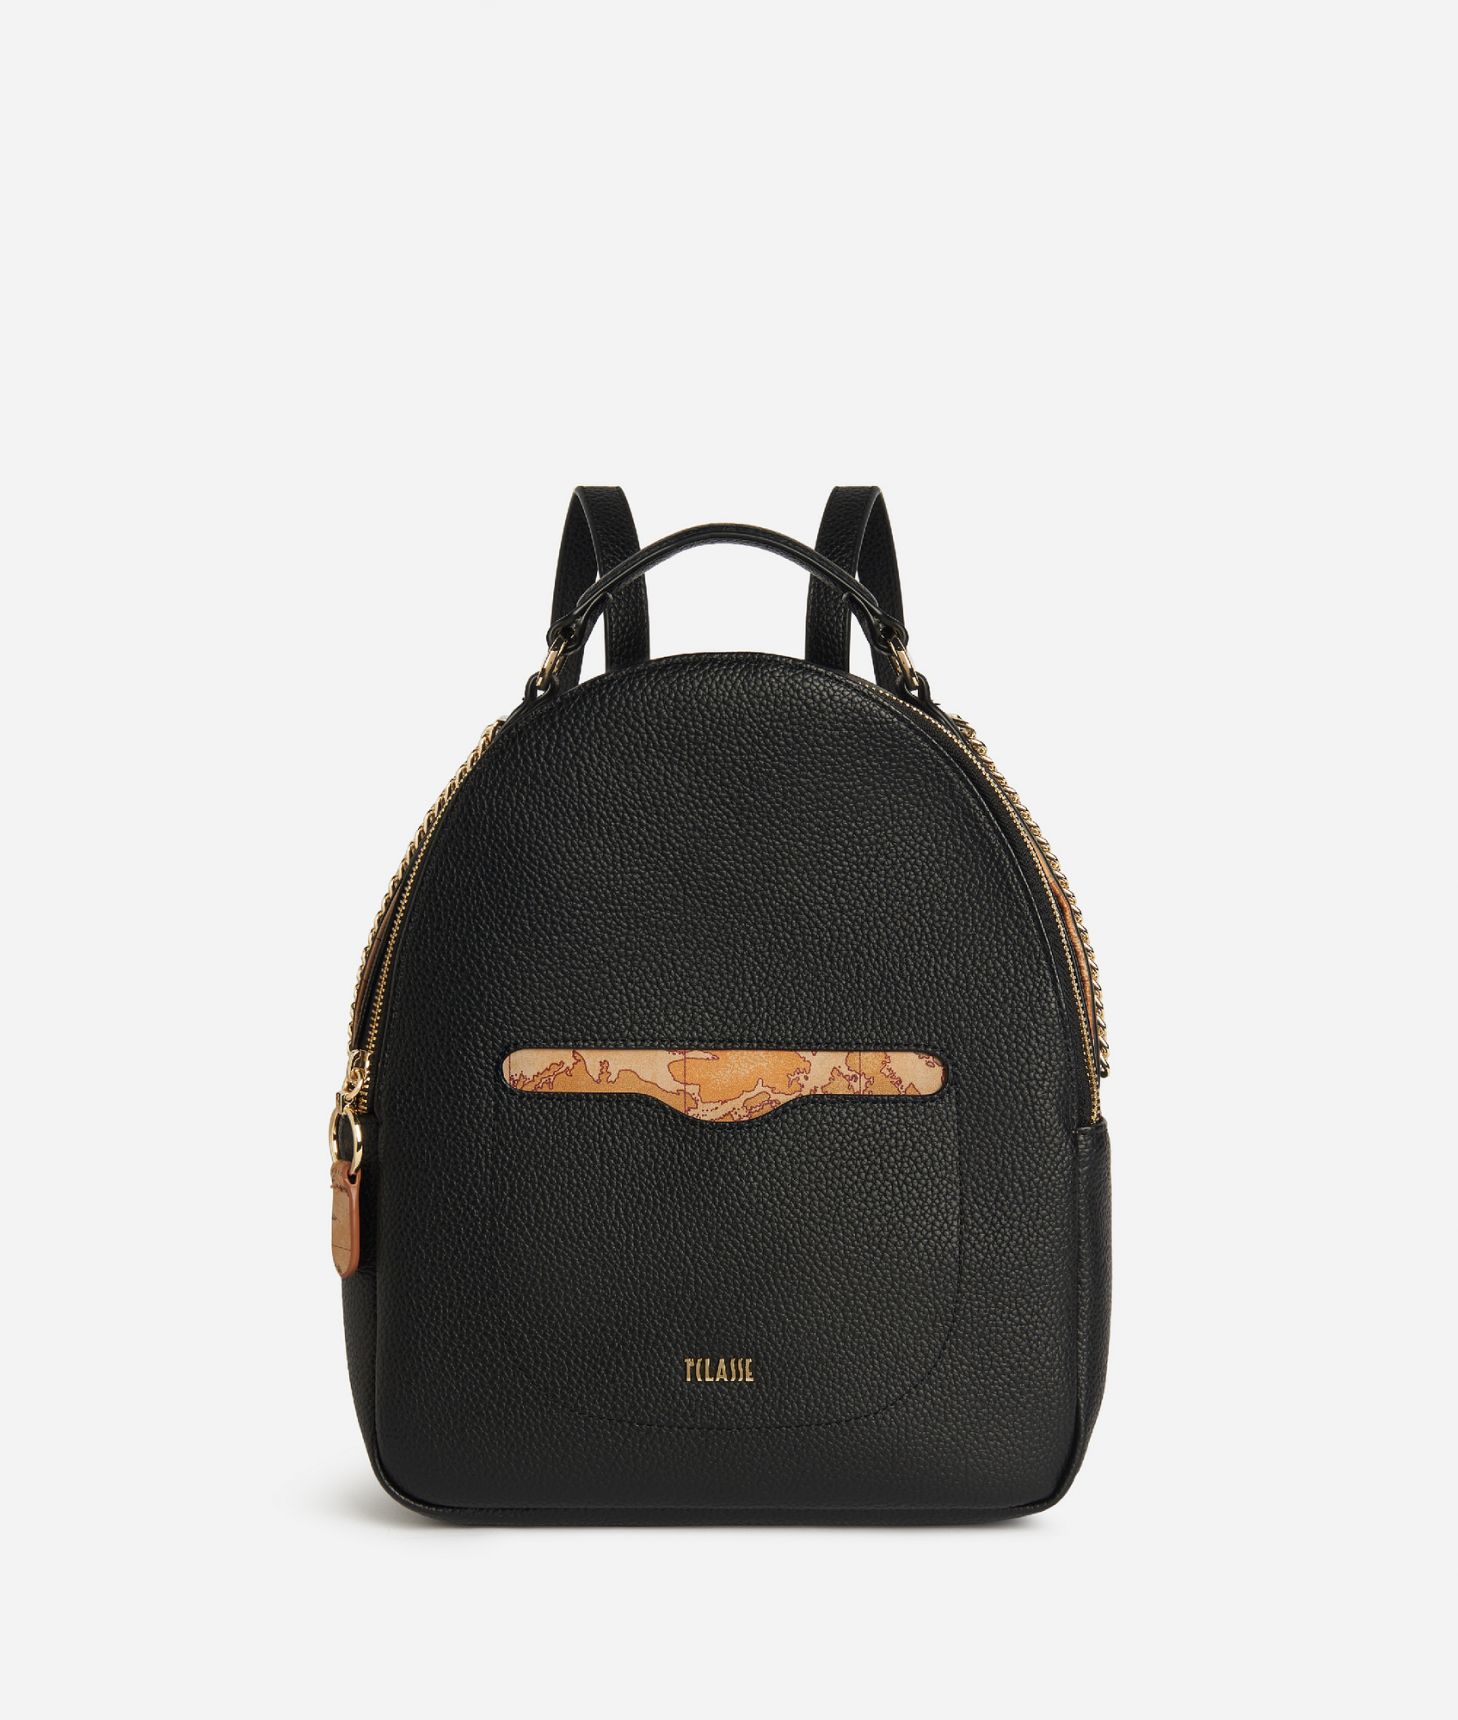 Madison backpack Black,front